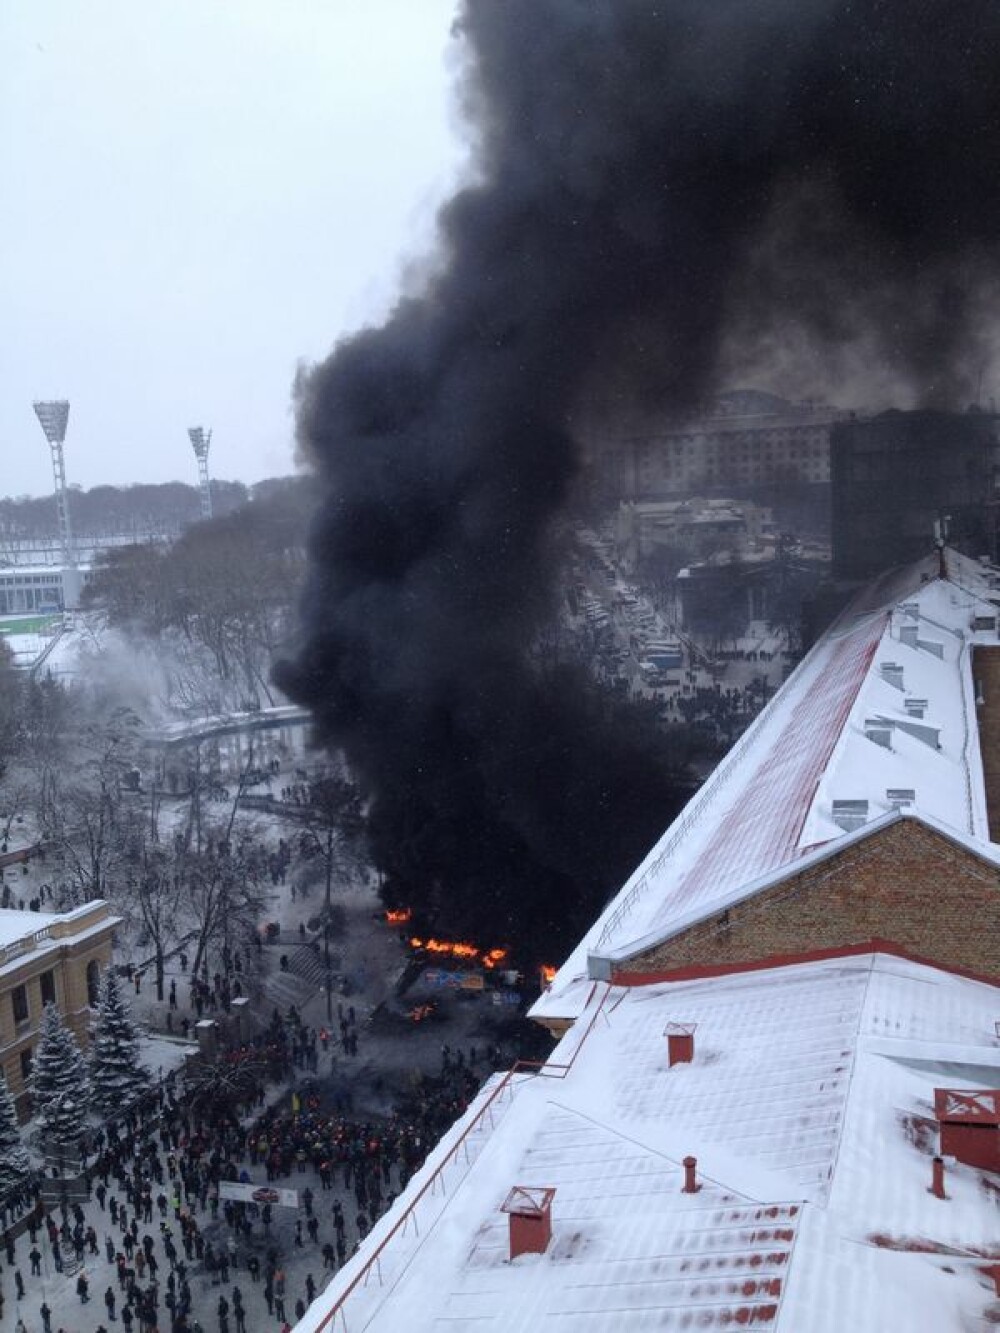 Criza din Ucraina. Mii de protestatari au luat cu asalt aseara o cladire ocupata de peste 200 de forte speciale - Imaginea 4